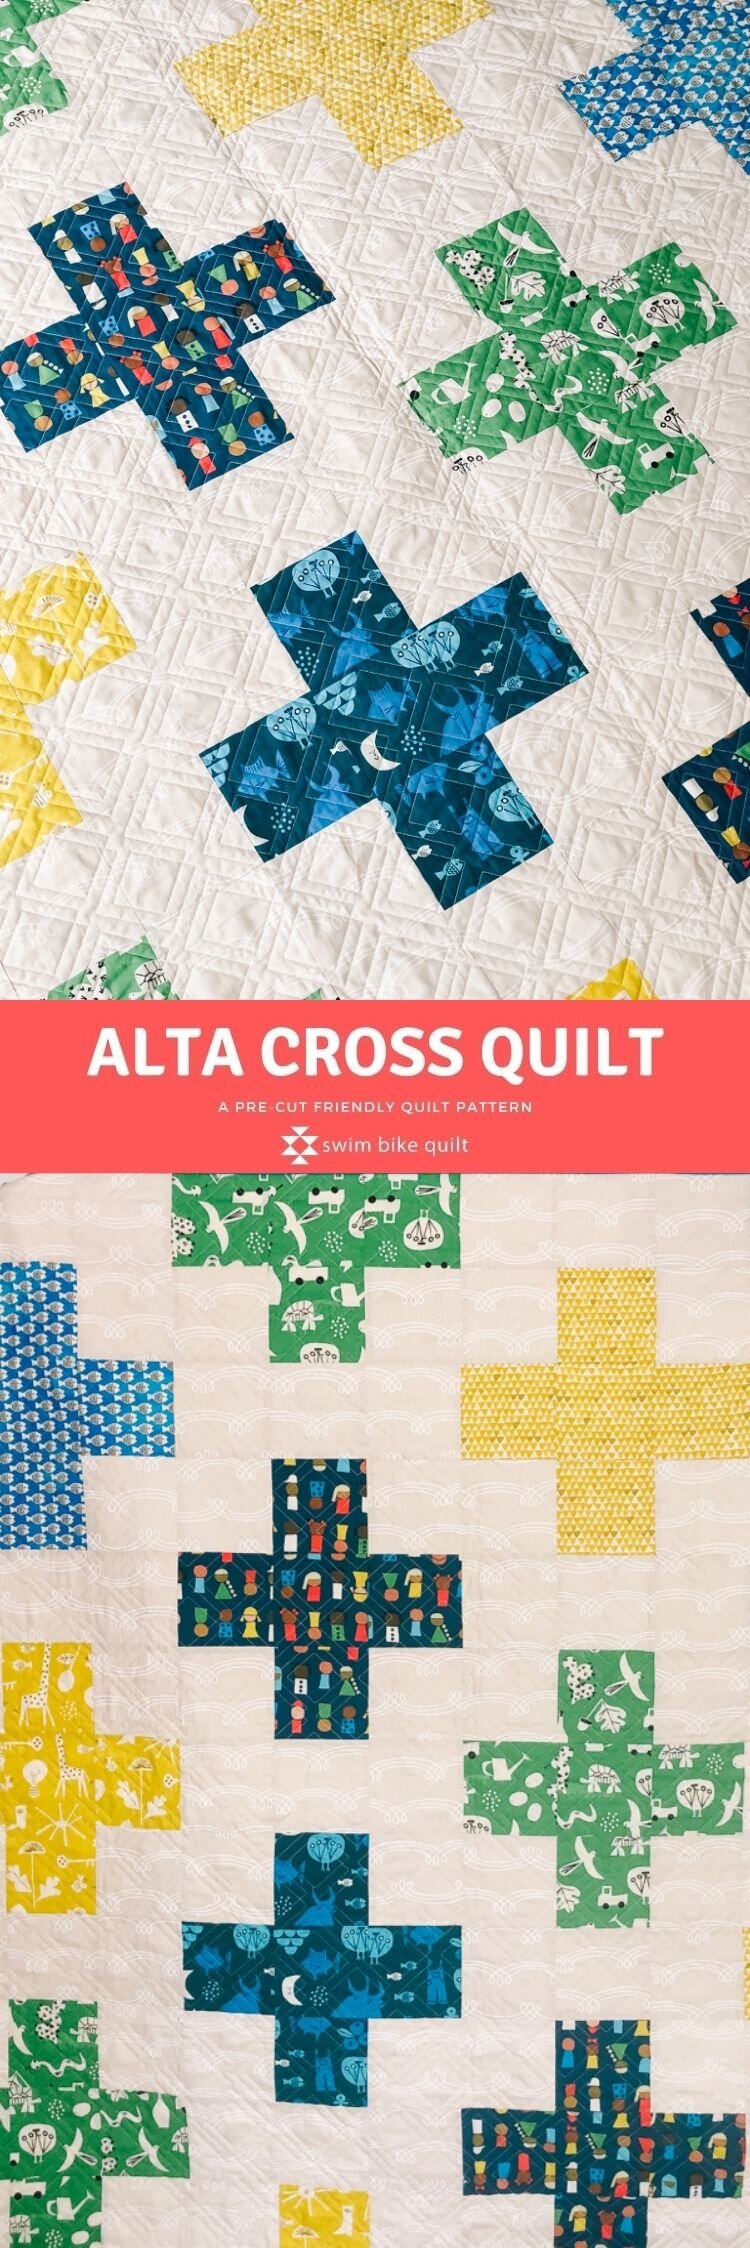 Alta_Cross_Quilt_Pattern_SwimBikeQuilt_KatieBlakesley5.jpg